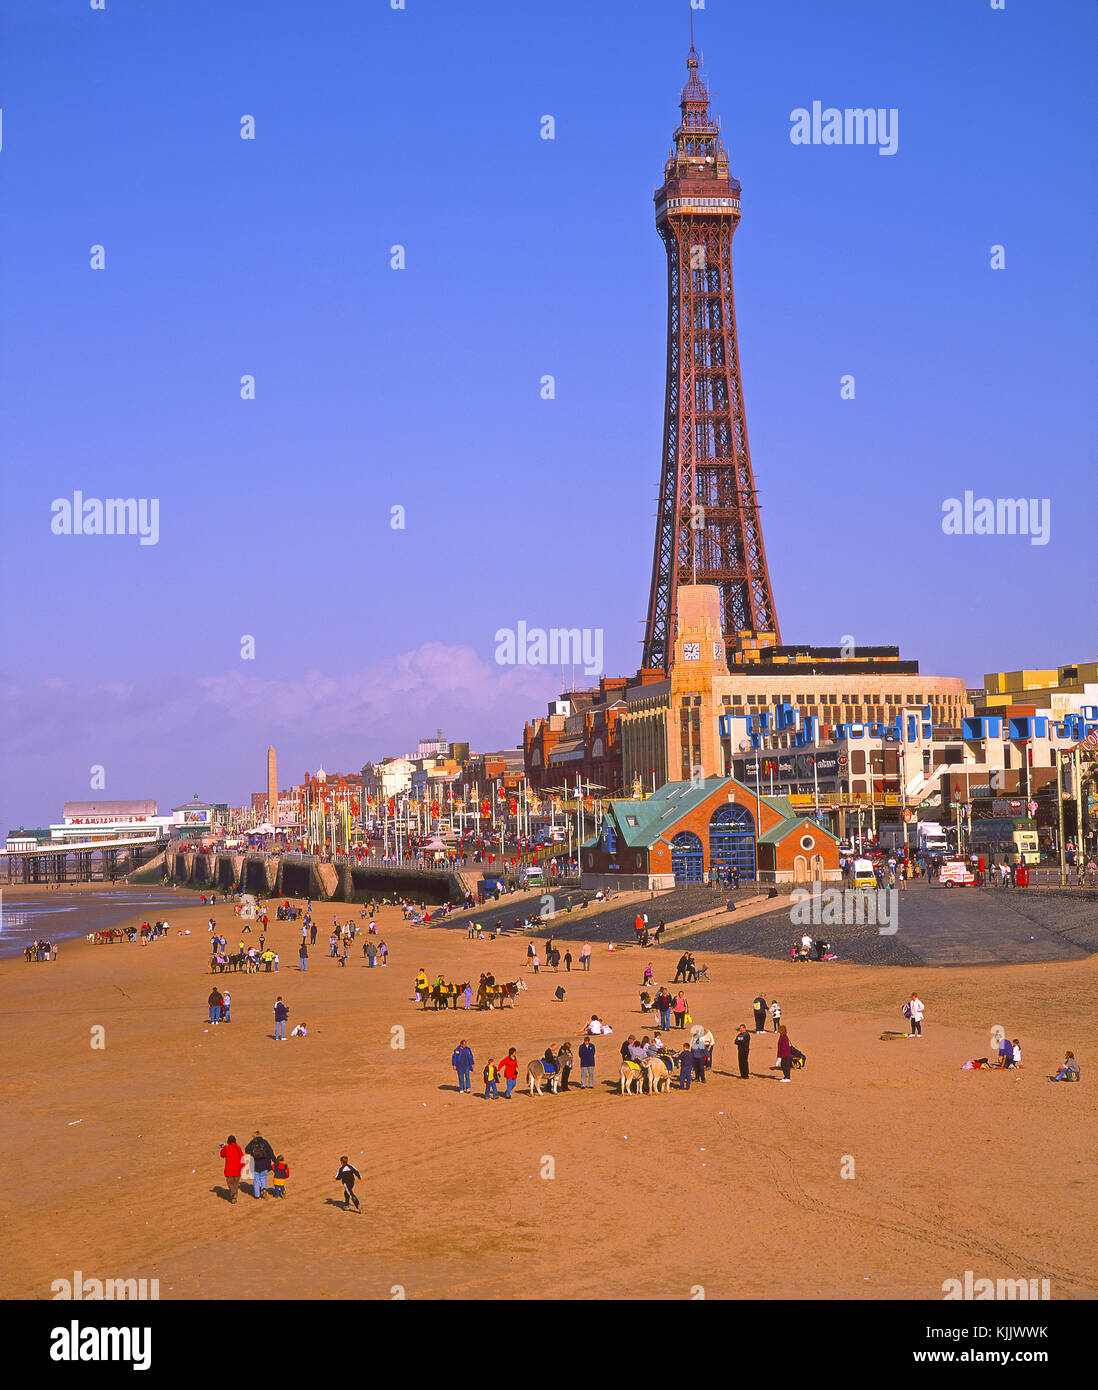 Blackpool sands avec ville et Tower, vue de central pier, Blackpool, Lancashire, Angleterre Banque D'Images